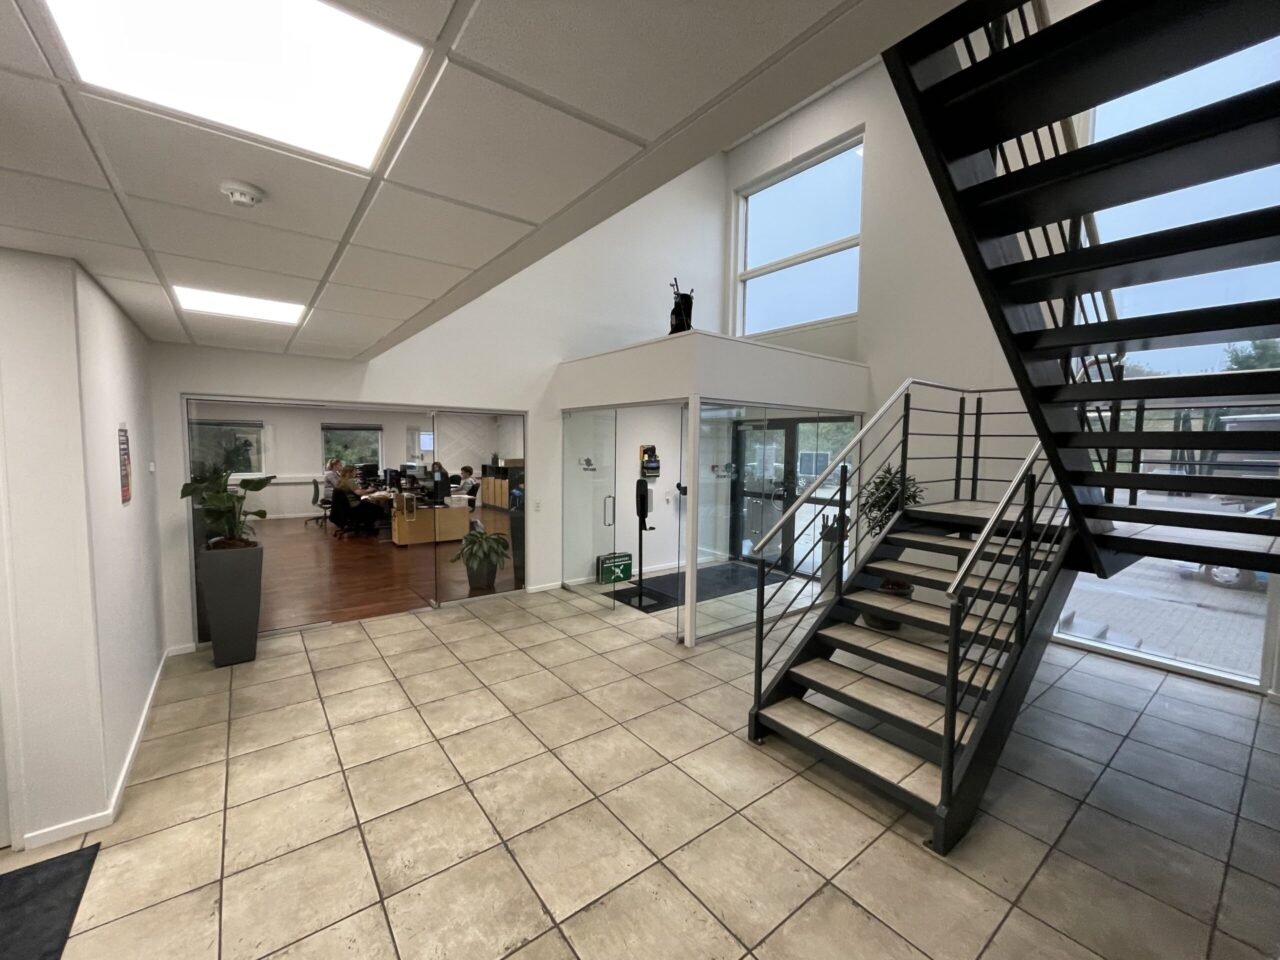 Kontor til leje i Kolding - Indgange med en trappe med beige fliser og sort gelænder og hvide vægge